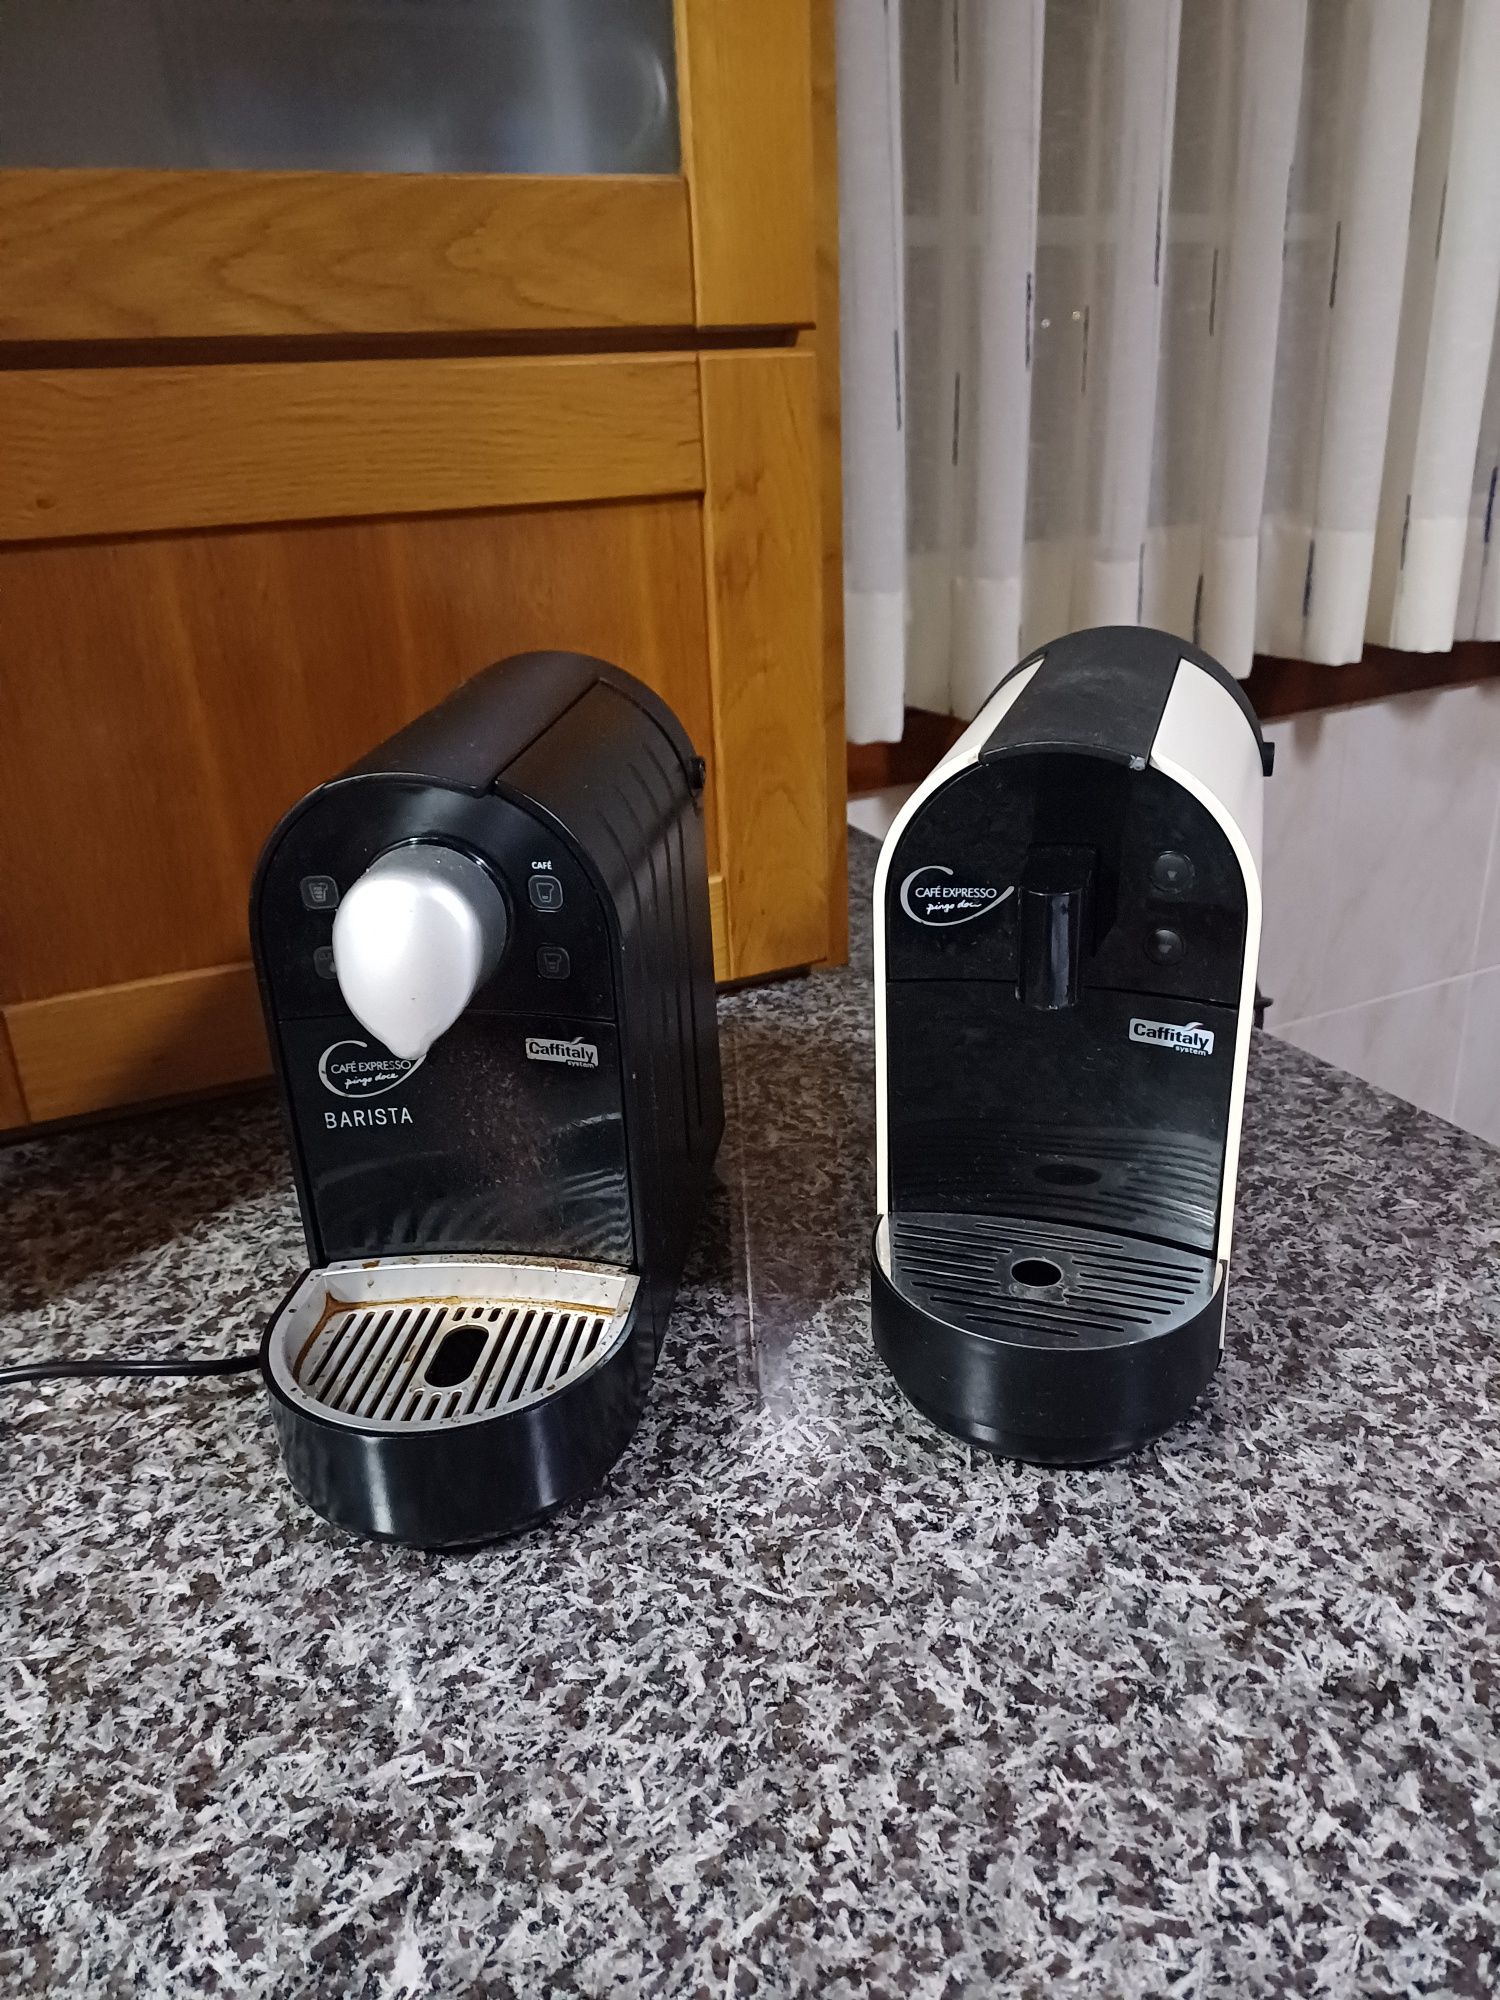 Máquinas café Pingo Doce avariadas